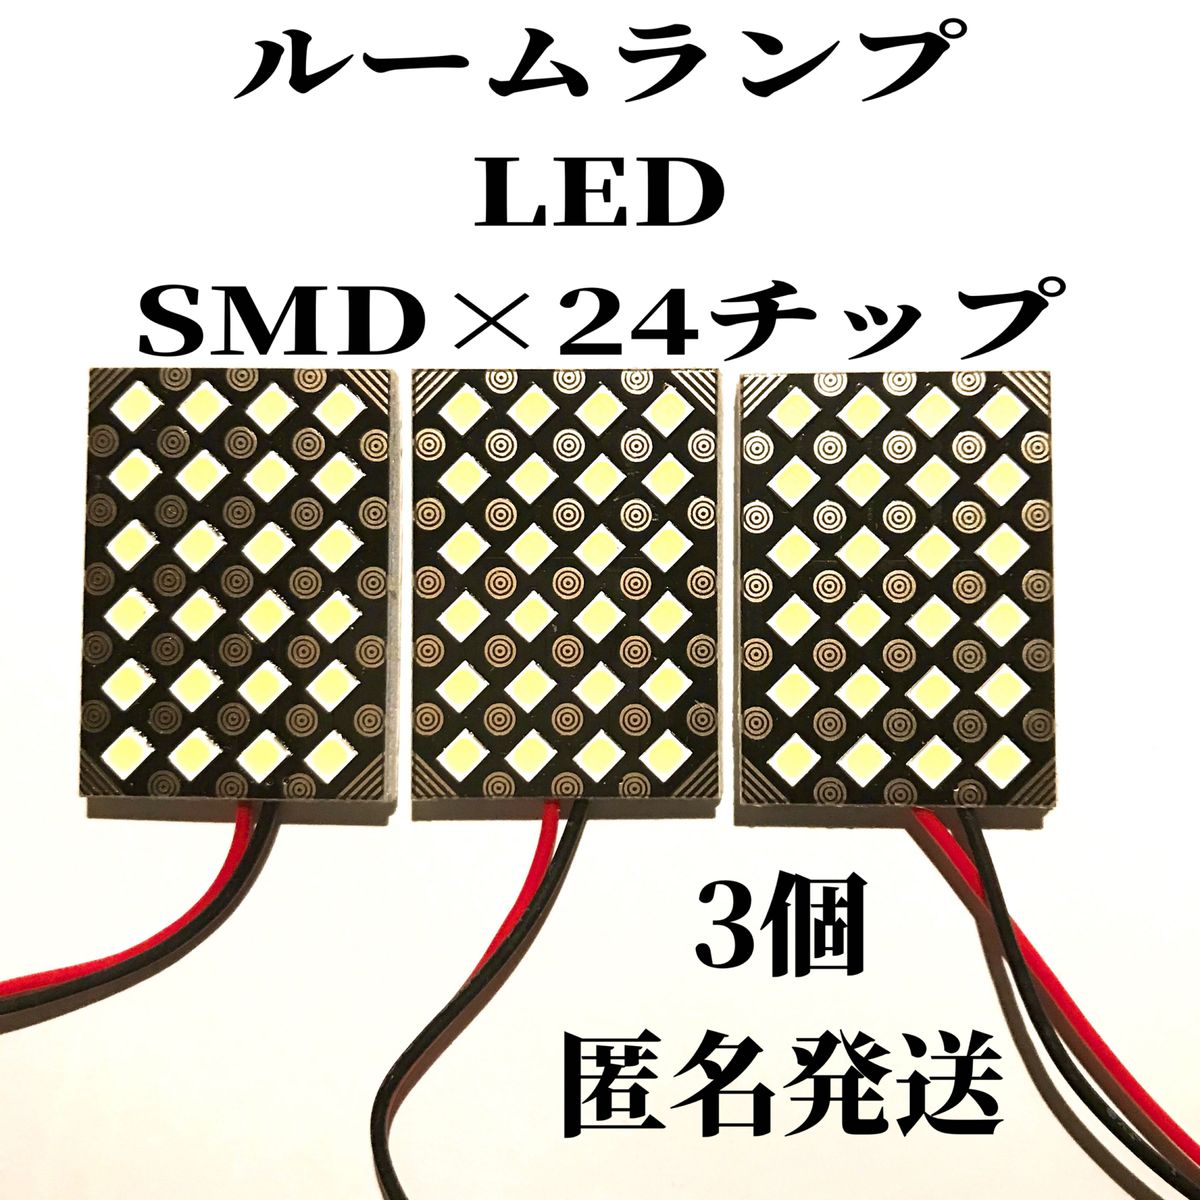 ルームランプ LED SMD×24チップ 白 ホワイト 3個 汎用品 室内灯 車内灯 高輝度 2835 LEDチップ